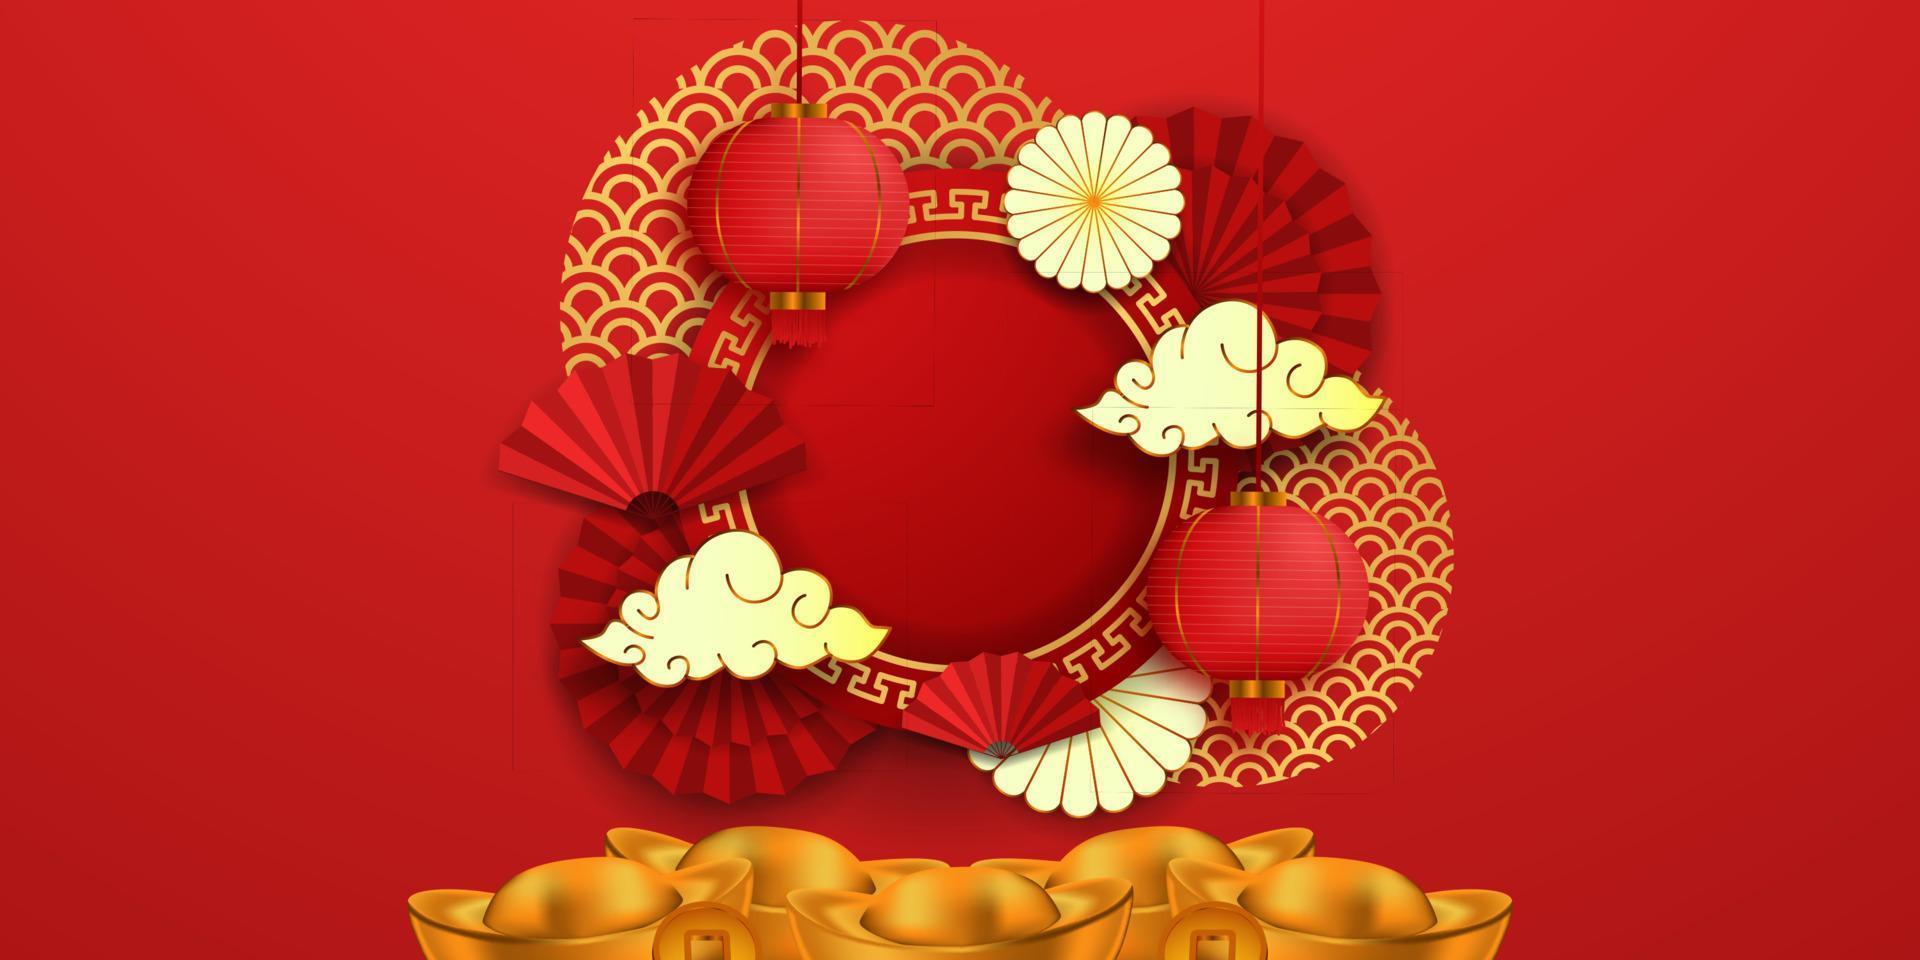 suspendus asiatique moderne traditionnel. joyeux nouvel an chinois avec lanterne, or lingot de sycee vecteur